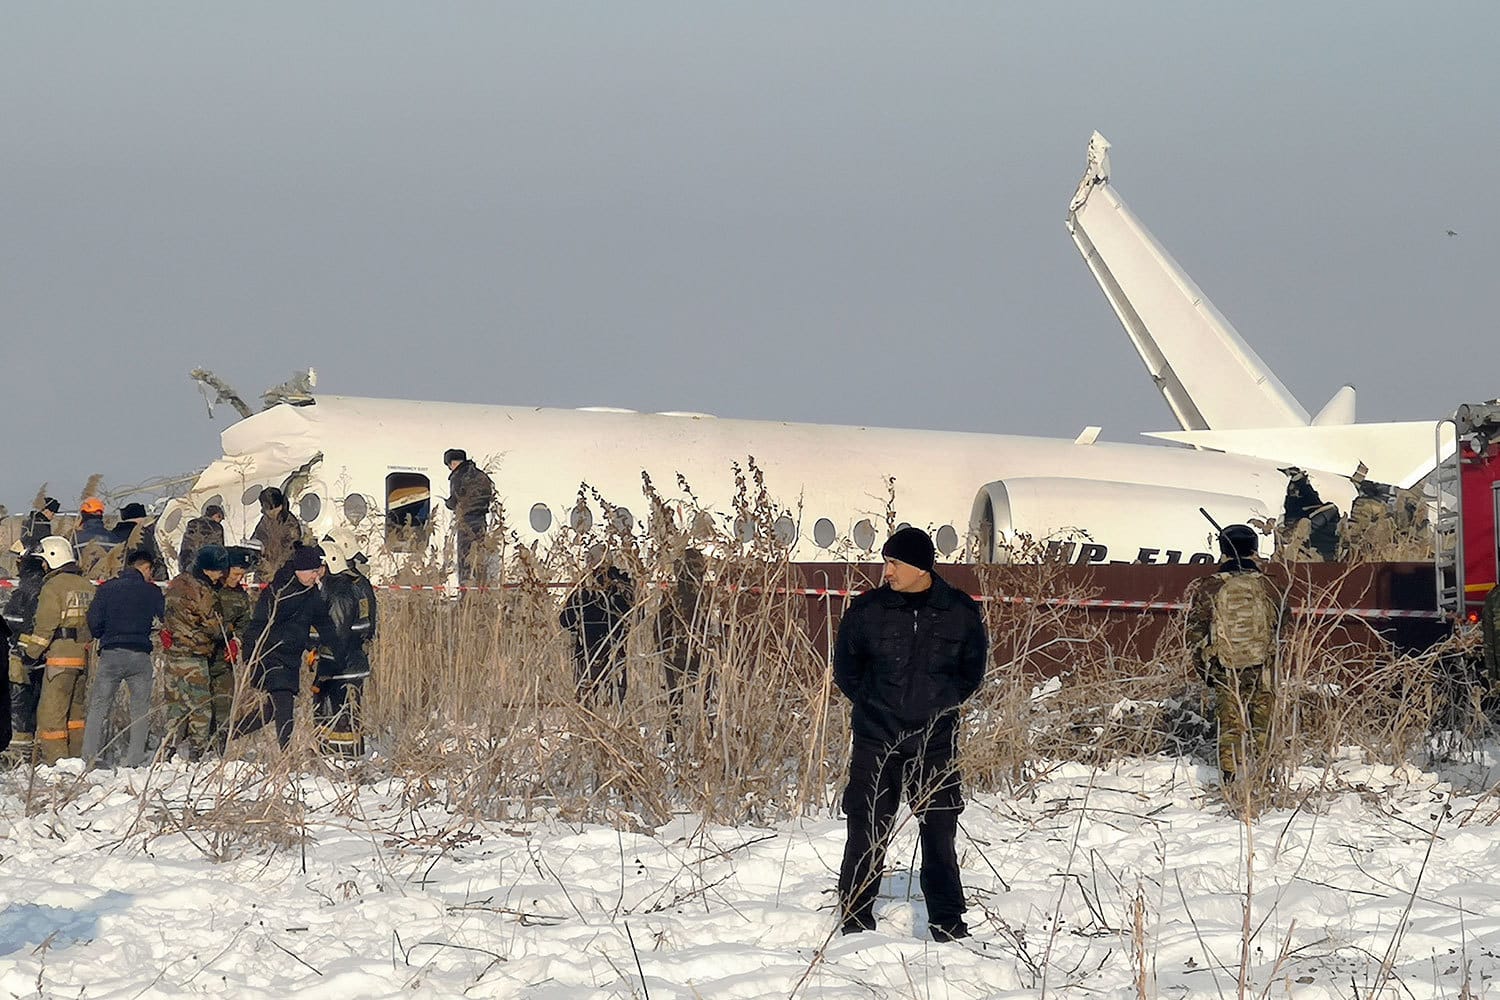 В Казахстане разбился самолёт: есть погибшие